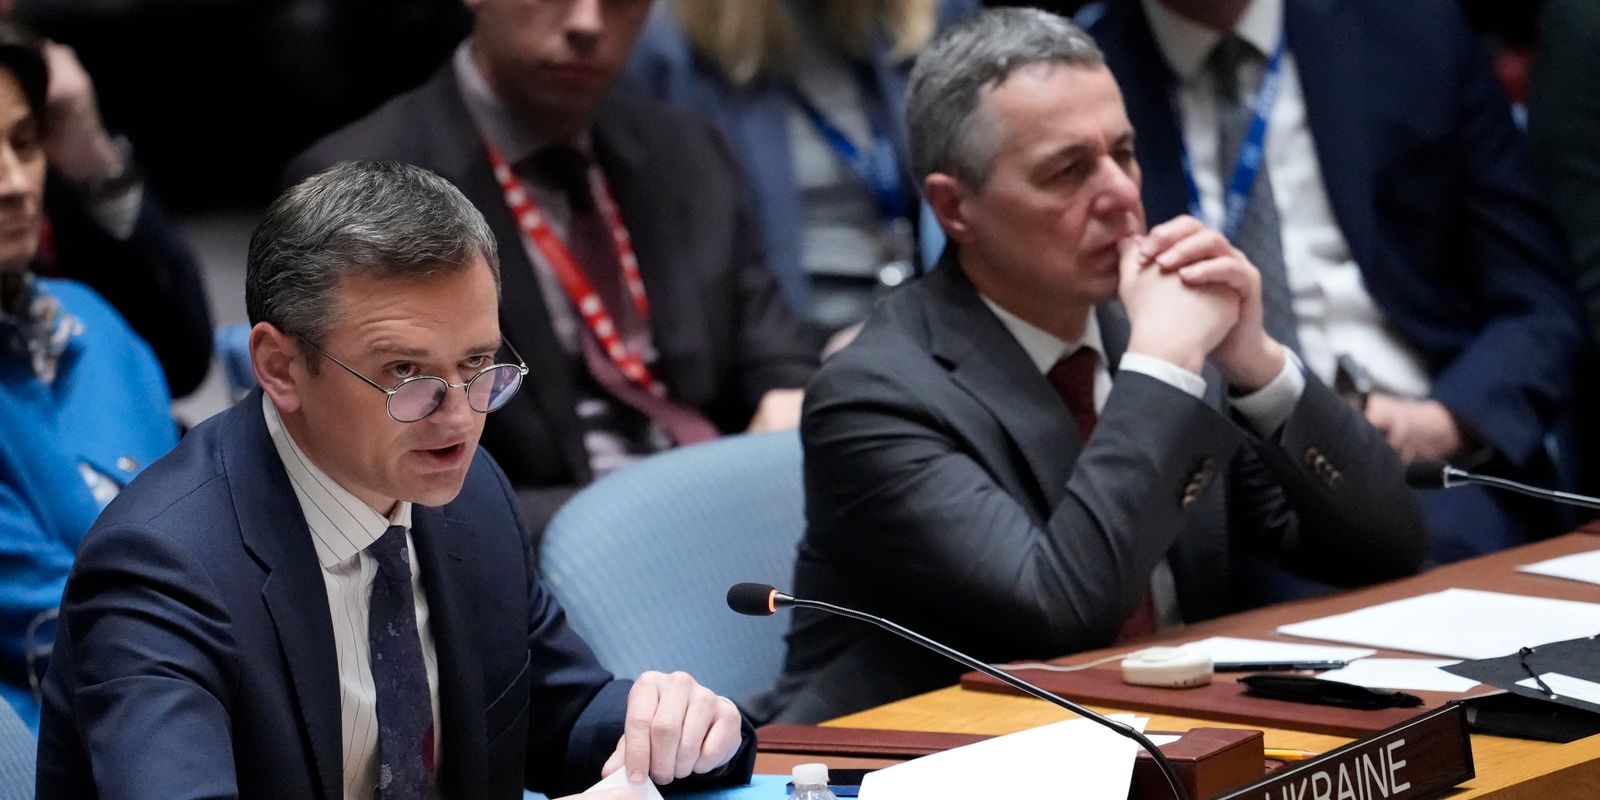 ukrainas utrikesminister: vi kommer att vinna kriget